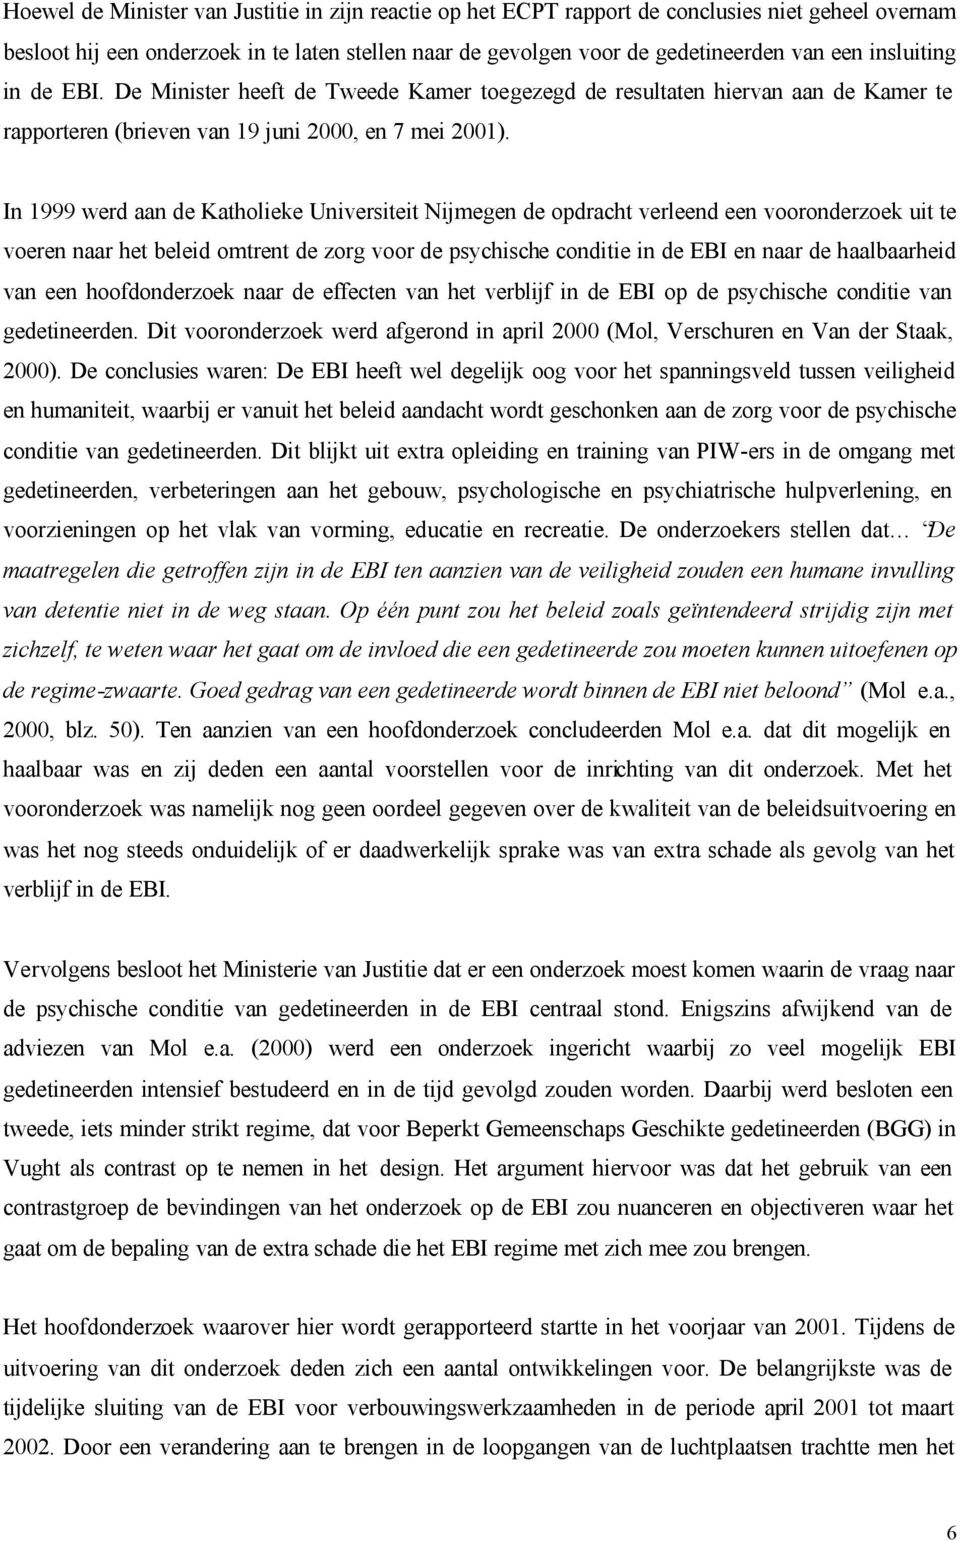 In 1999 werd aan de Katholieke Universiteit Nijmegen de opdracht verleend een vooronderzoek uit te voeren naar het beleid omtrent de zorg voor de psychische conditie in de EBI en naar de haalbaarheid